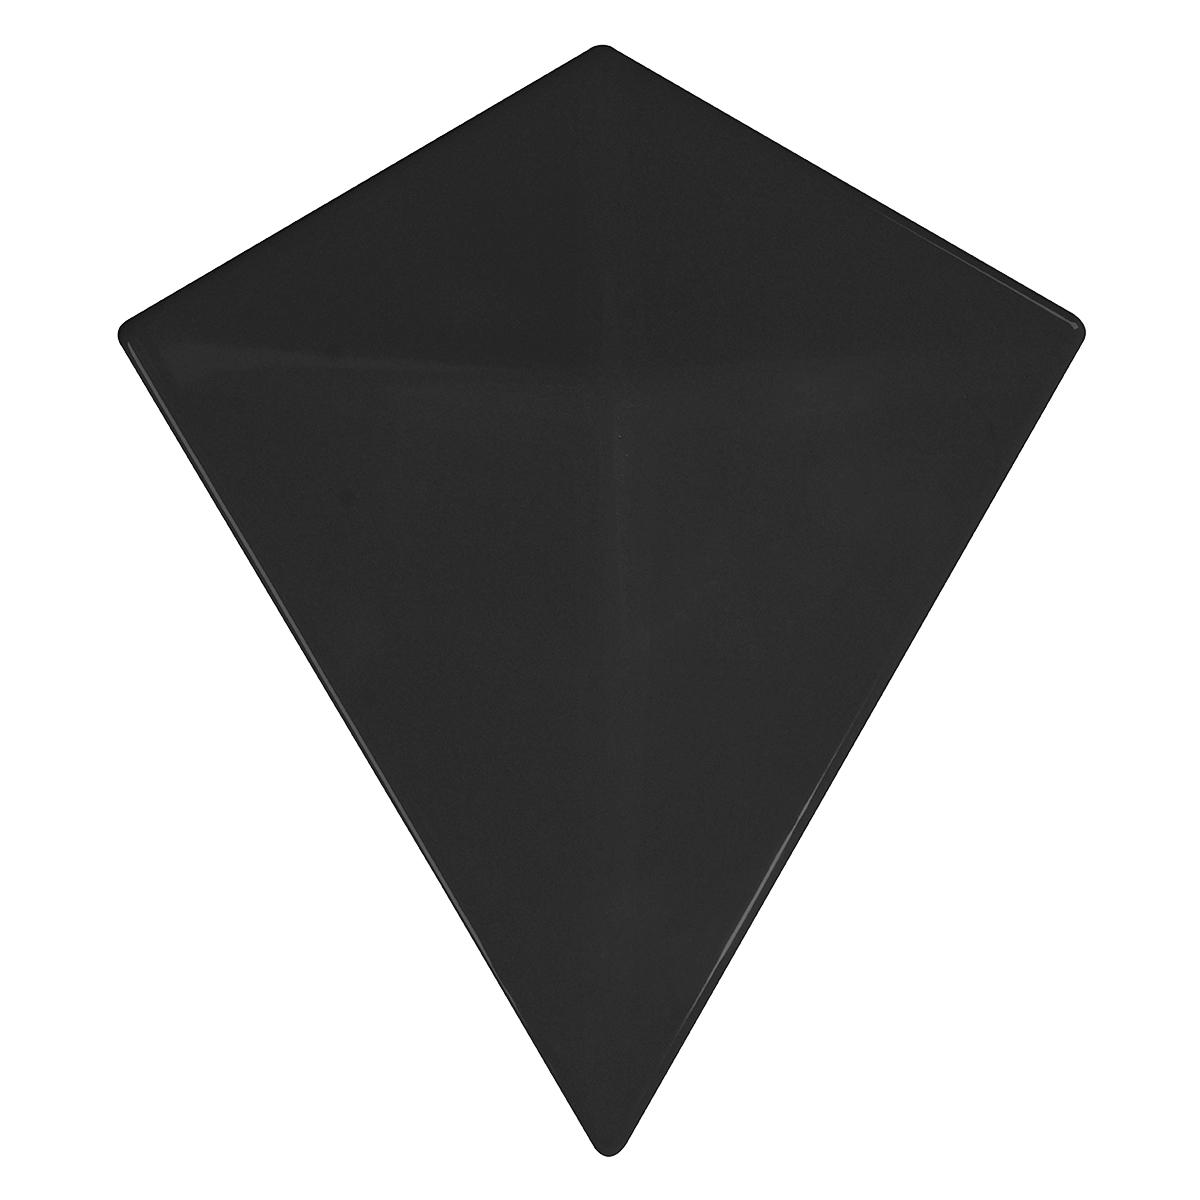 Inserto Diamond Negro Brillante - 16.5X19 cm - 0.39 m2